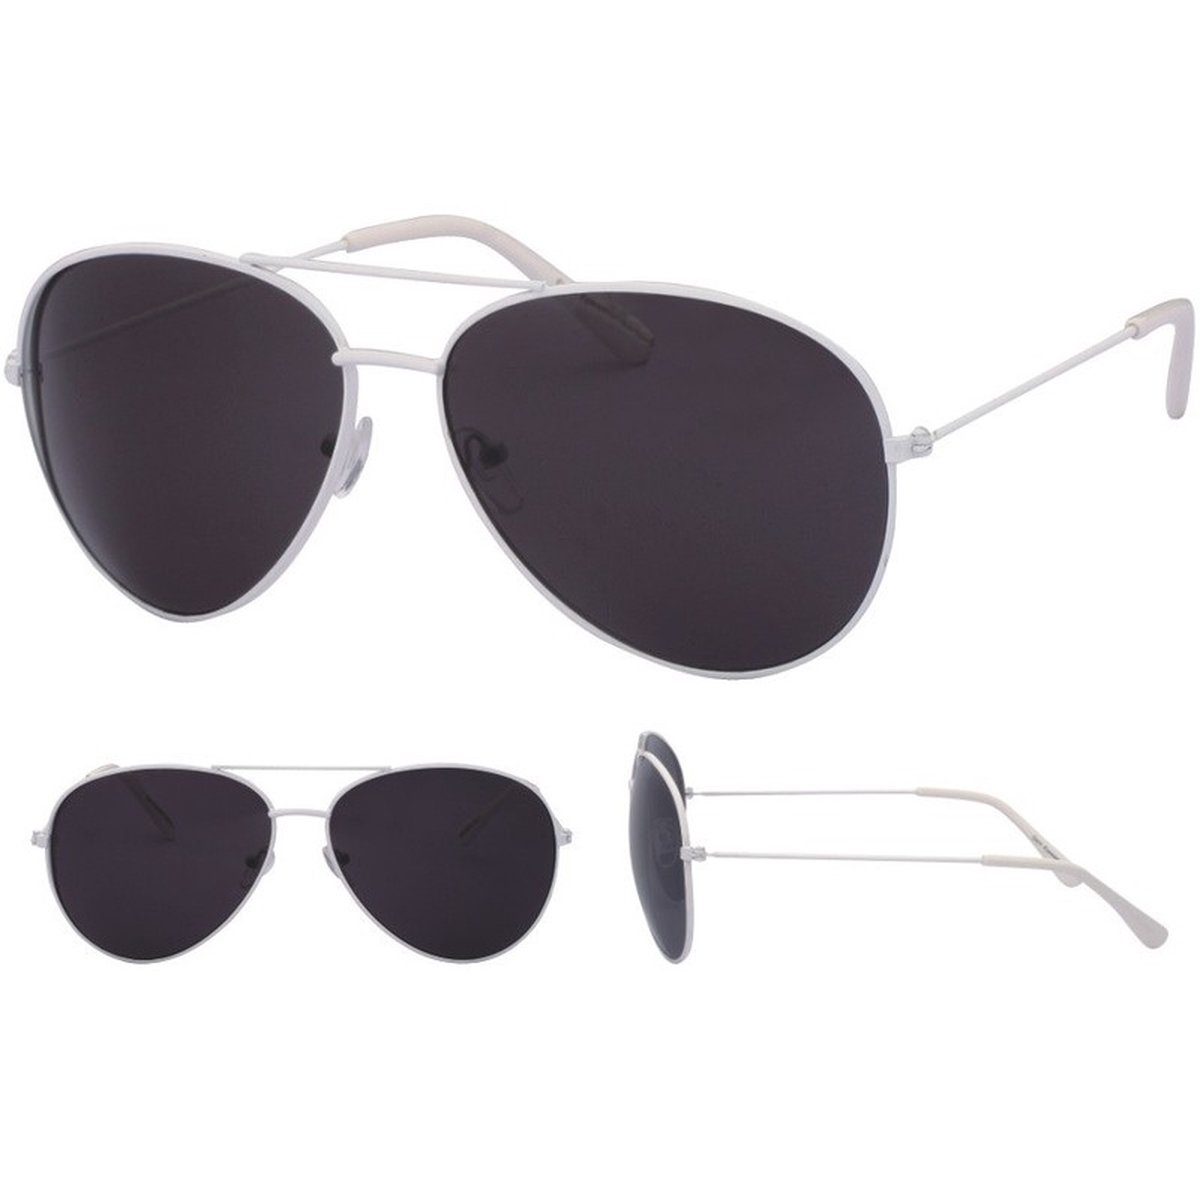 Piloten zonnebril wit met zwarte glazen voor volwassenen - Piloten zonnebrillen dames/heren